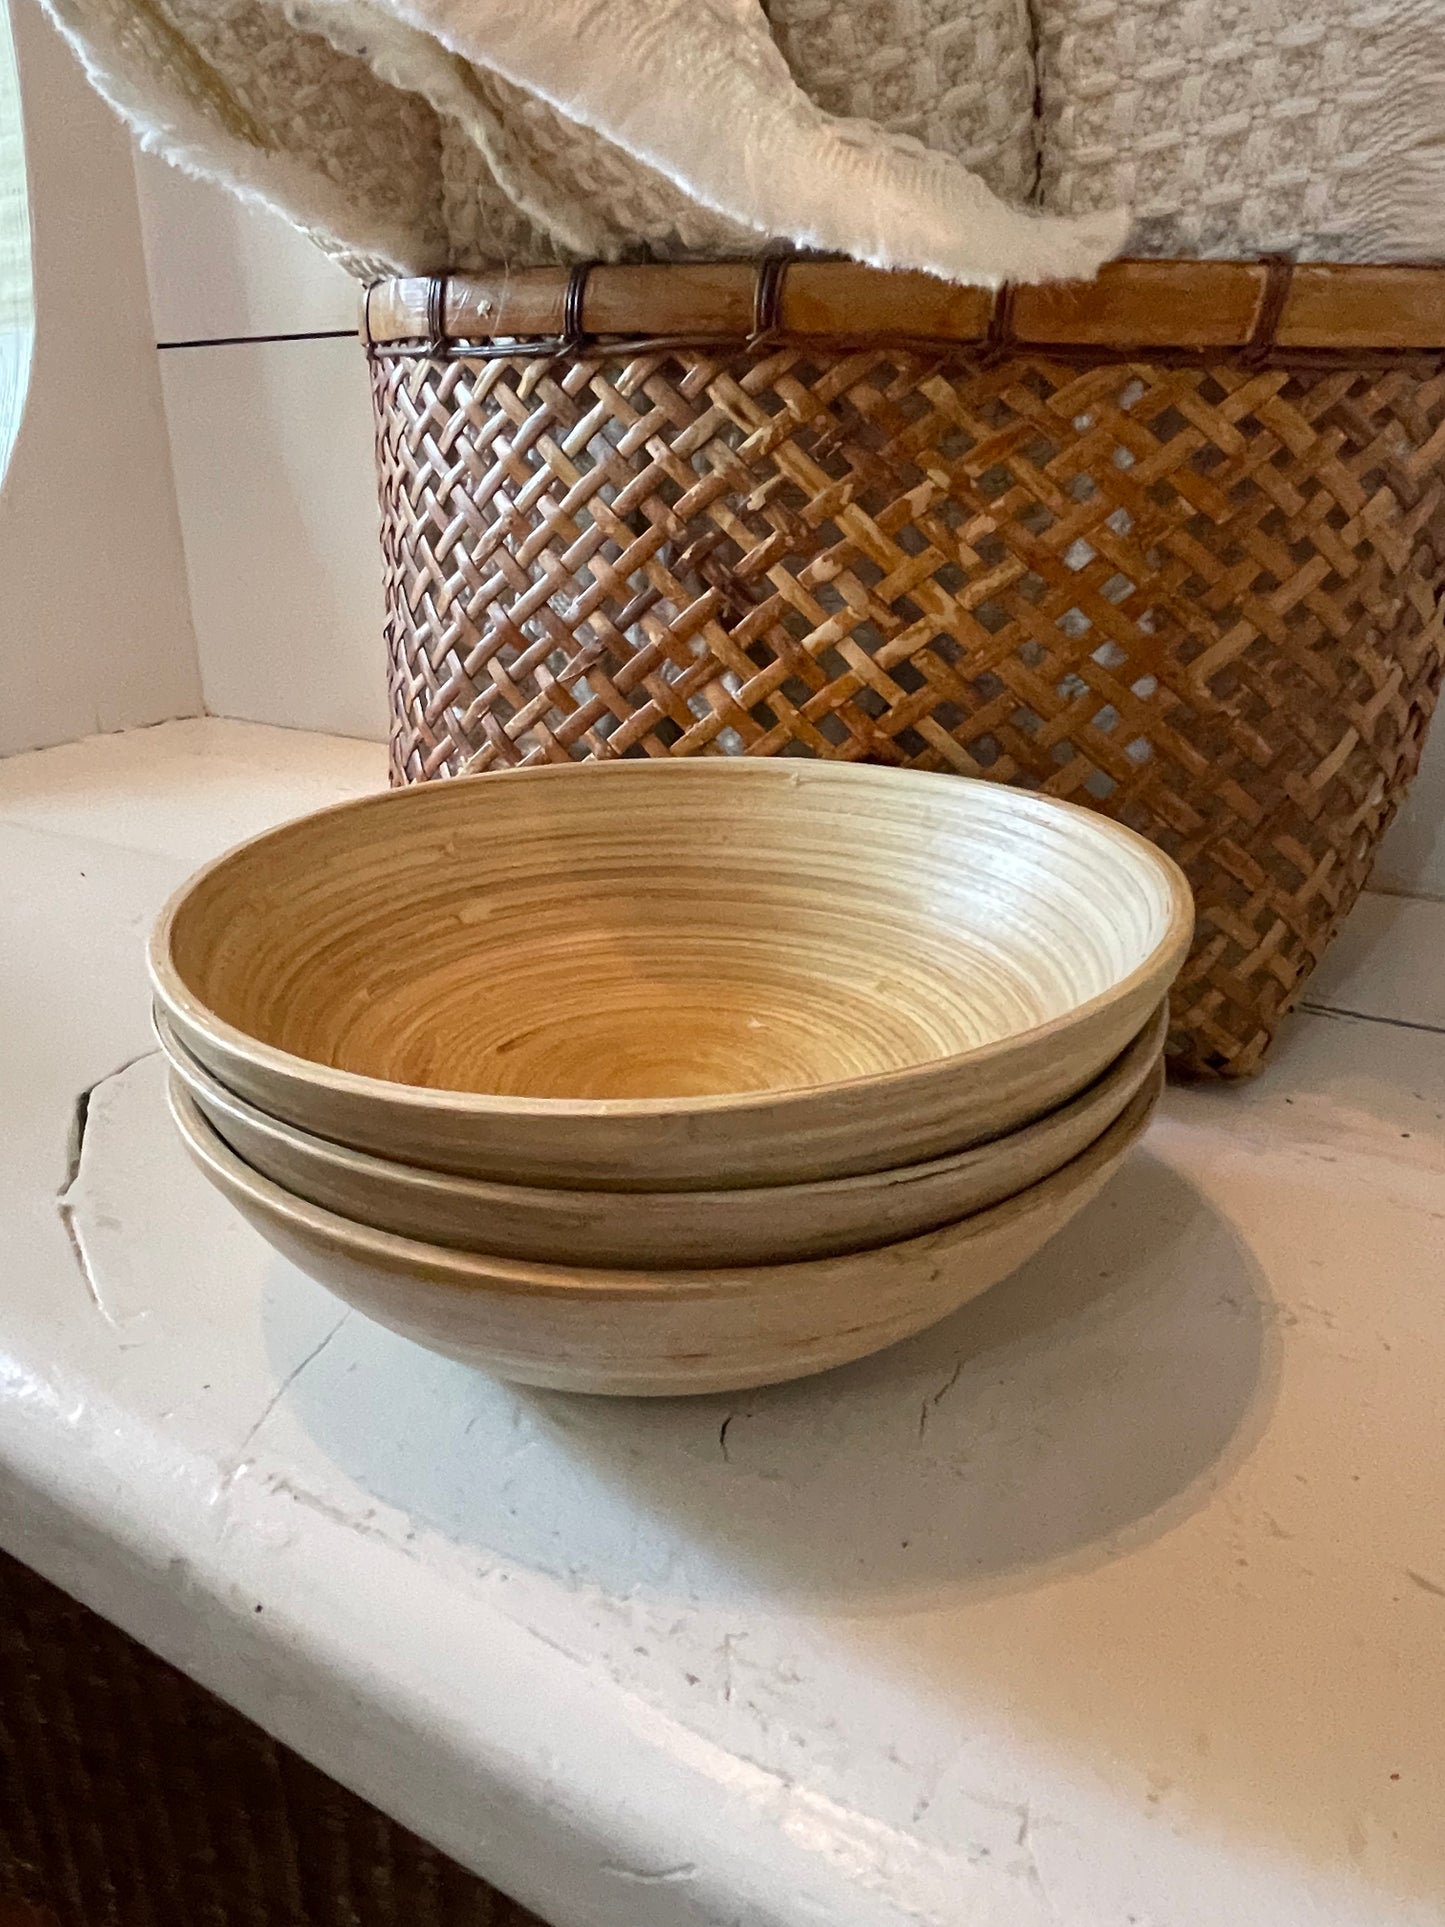 Bamboo serving bowls